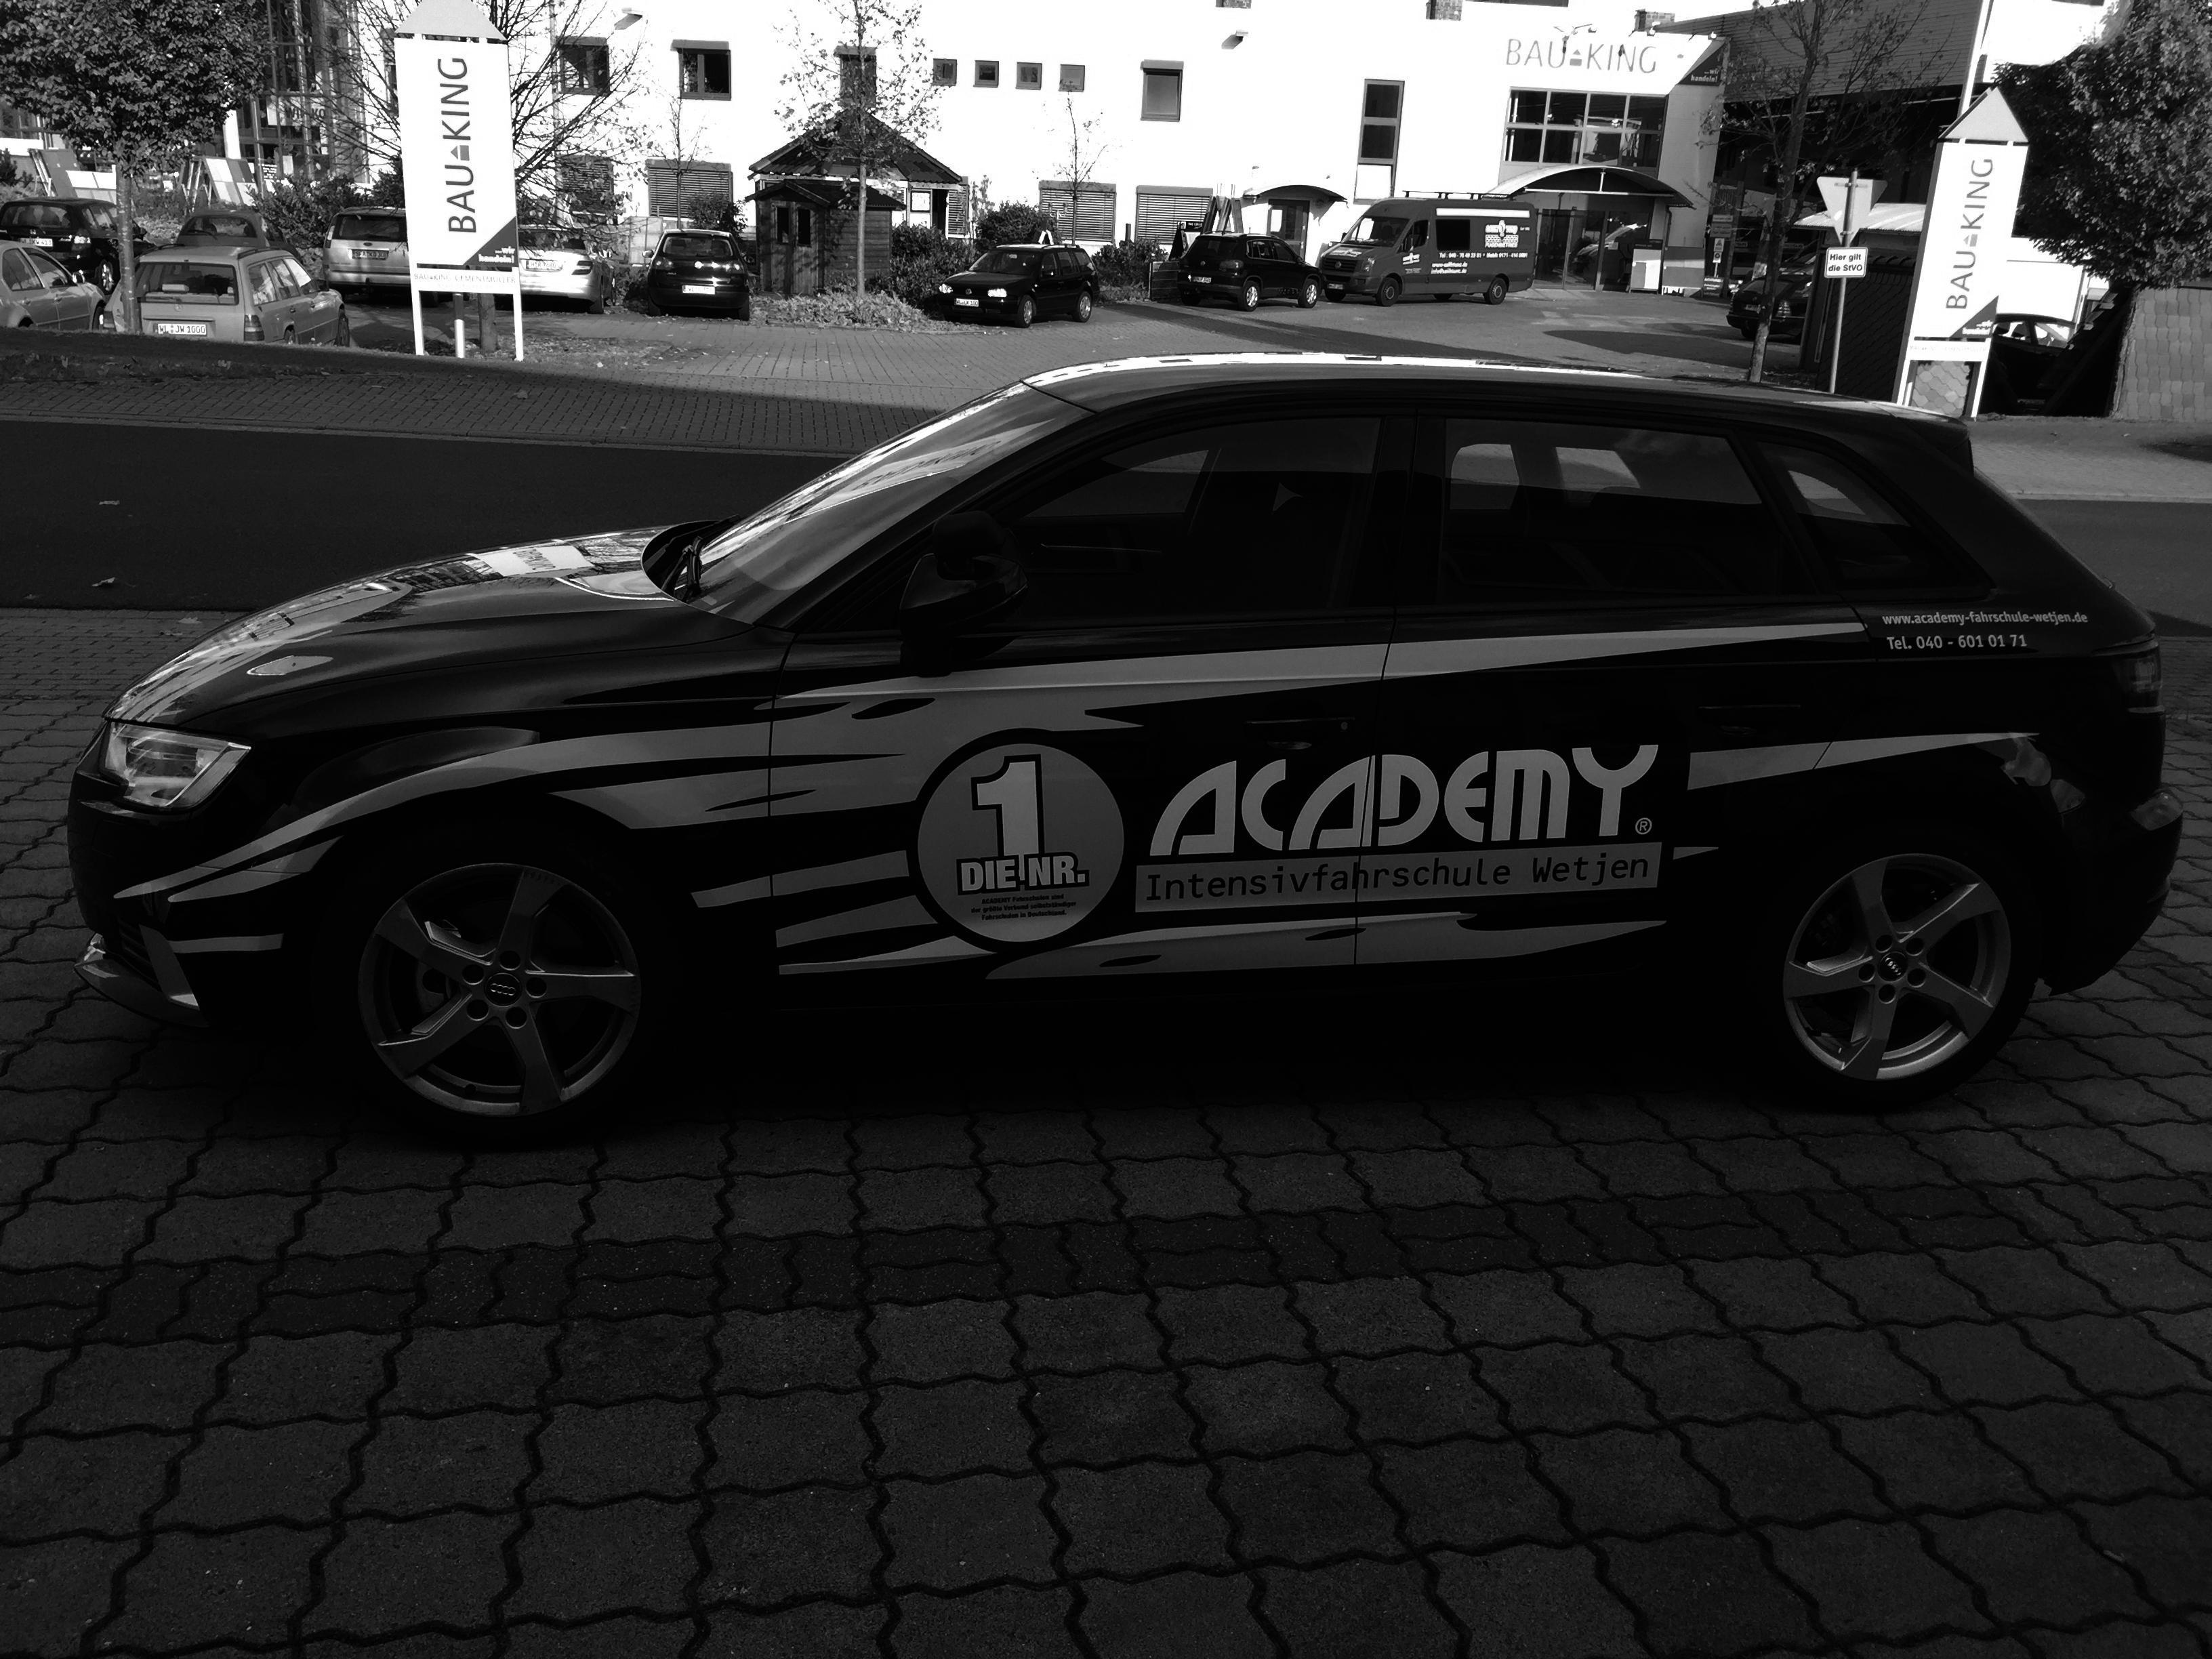 ACADEMY Fahrschule Audi A3Sportback